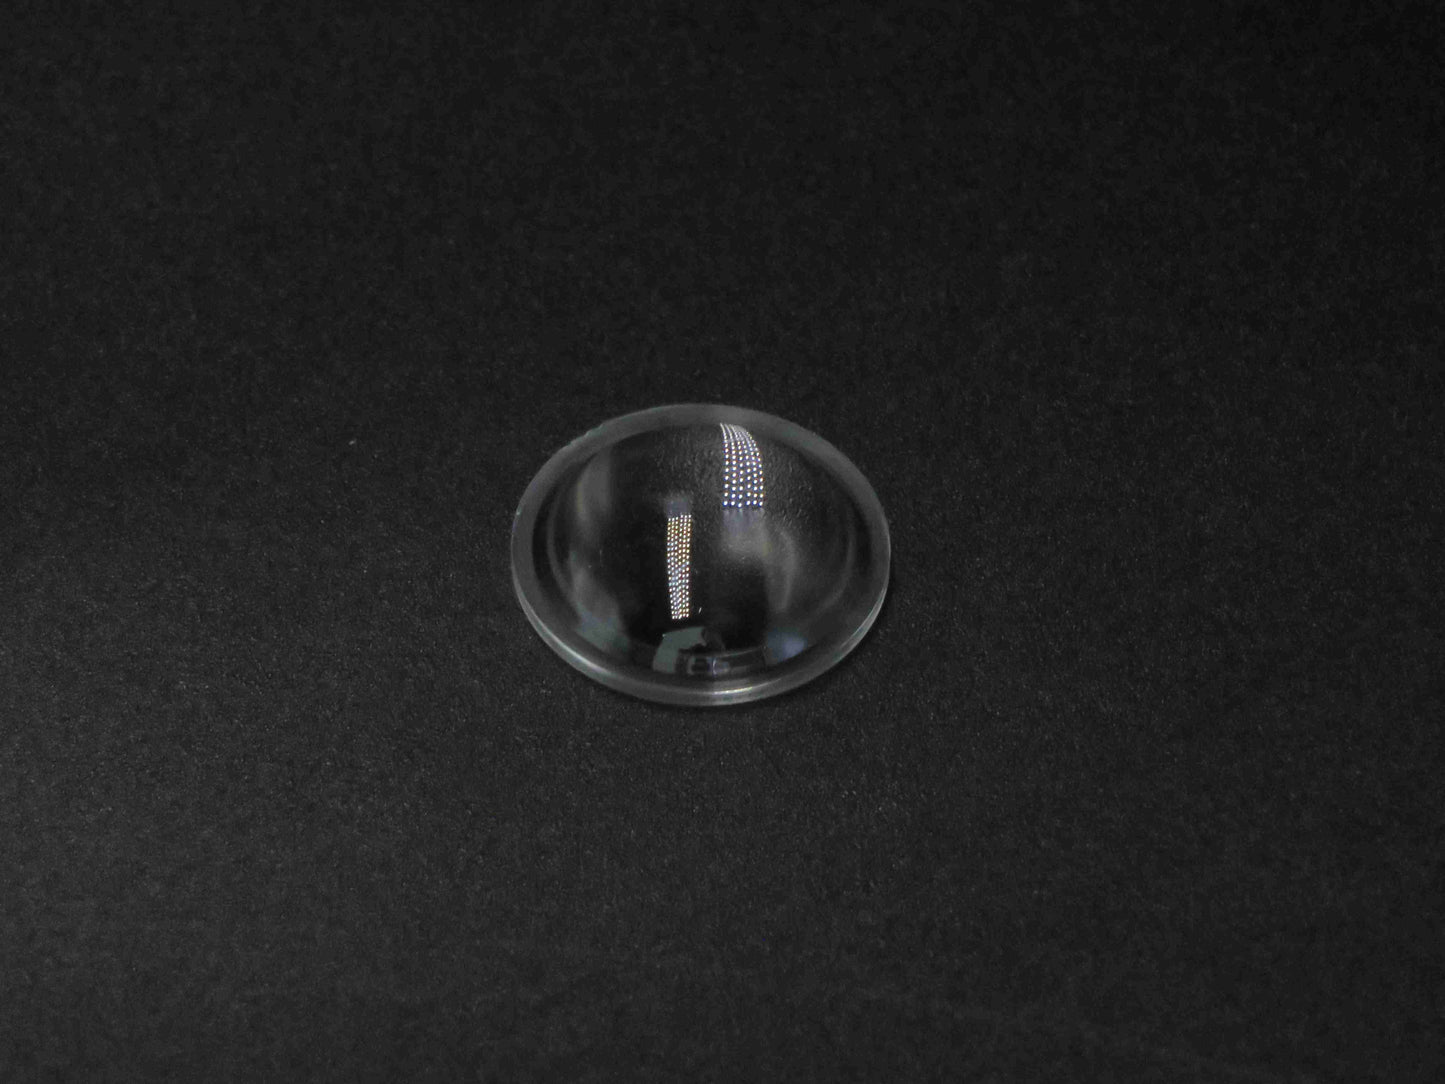 Φακοί led 21.5 mm για κατασκευή φακών λαμπτήρων προβολής με συγκέντρωση φωτός προβολέα